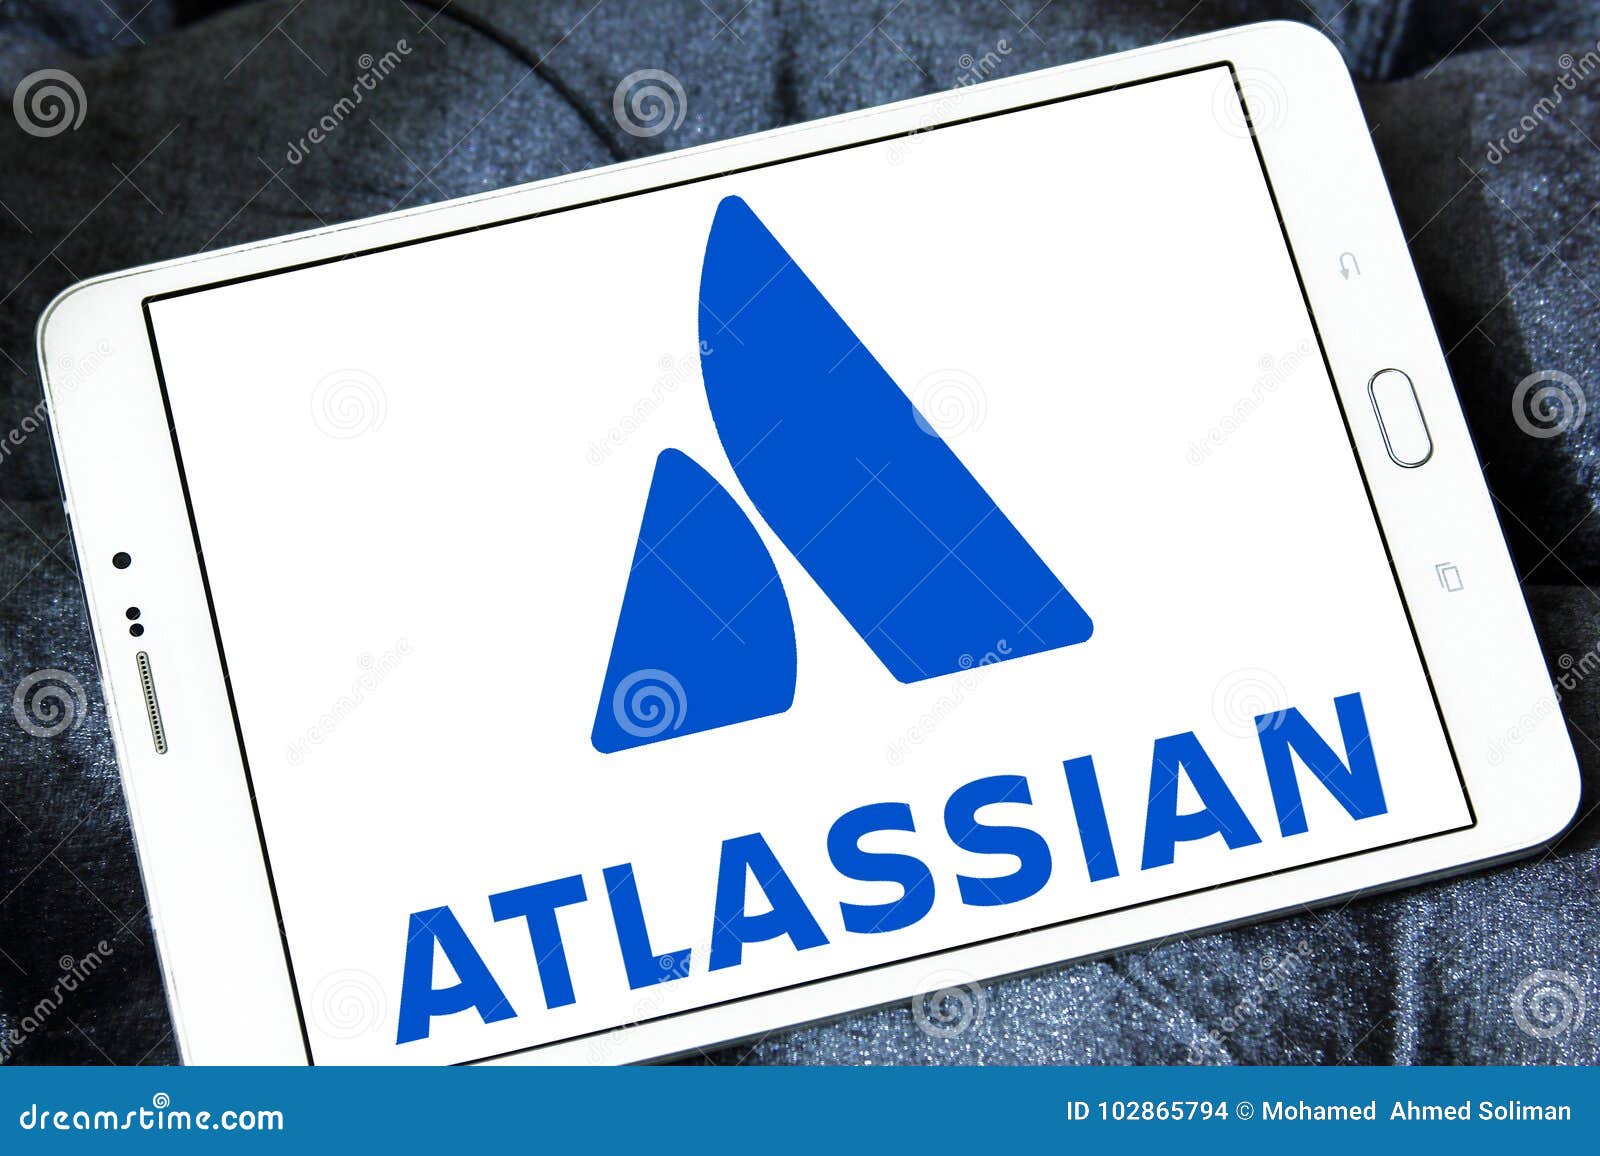 Atlassian Stock Chart